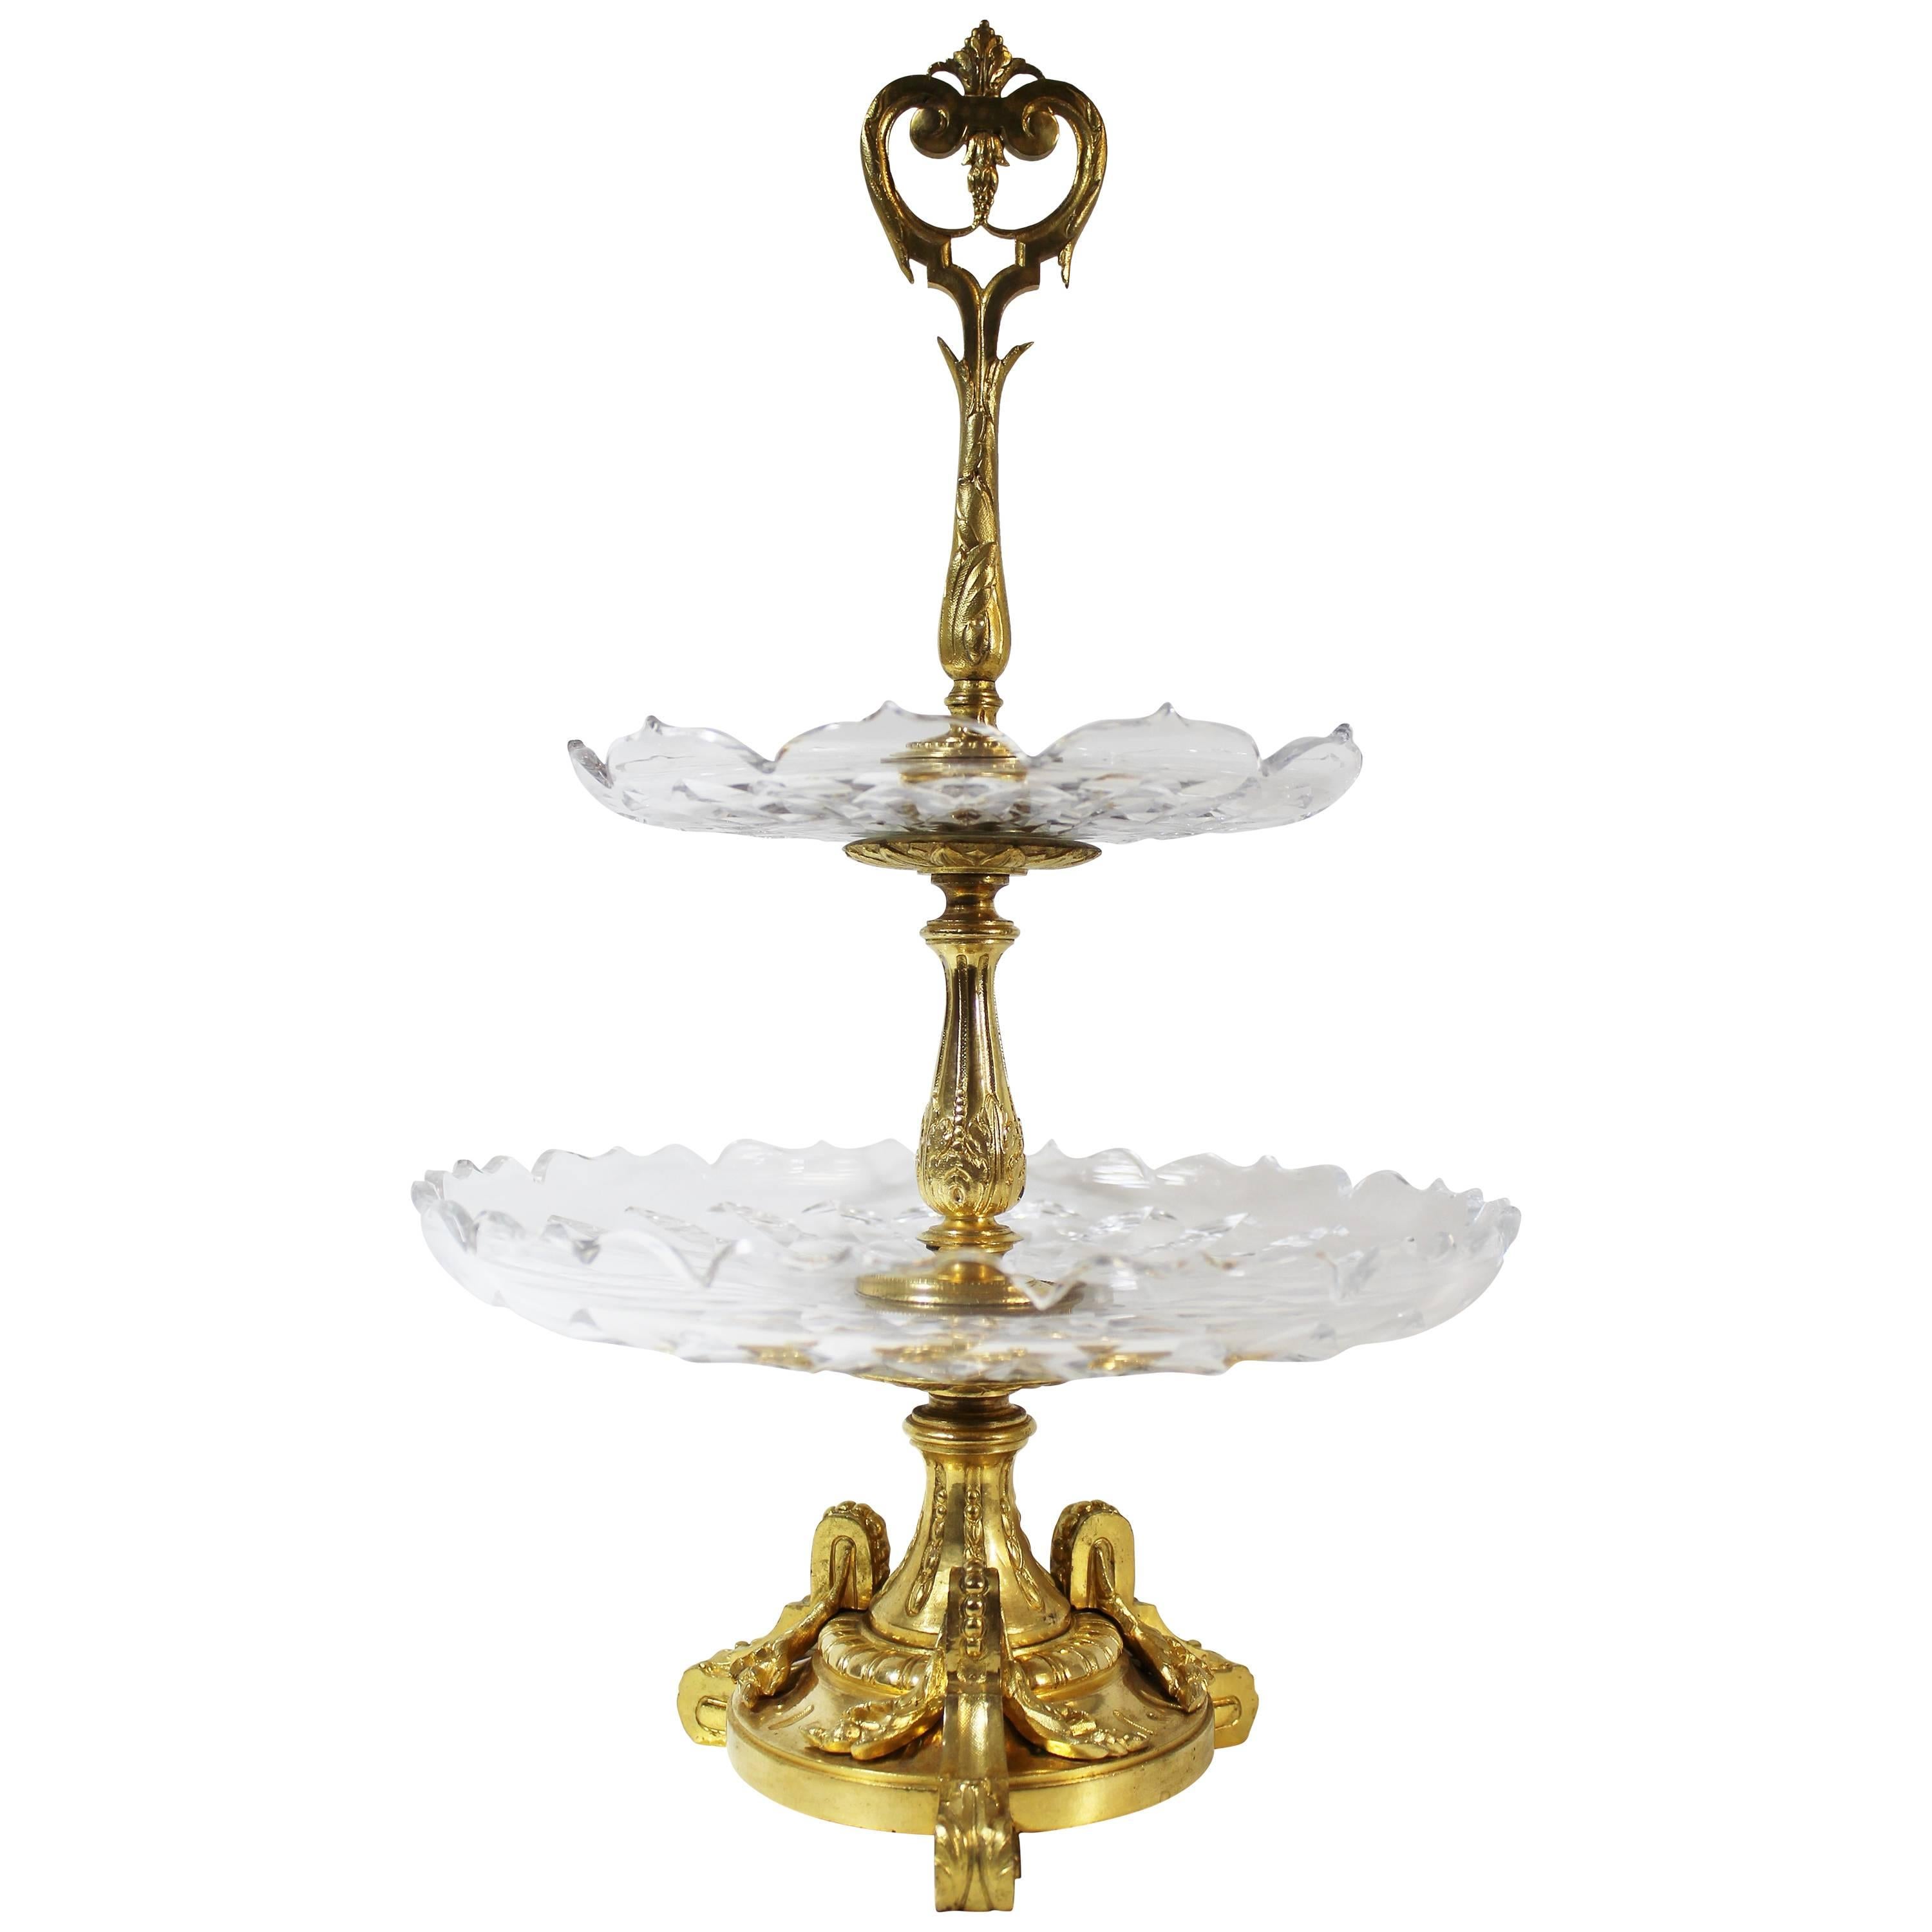 Zweistöckiger Surtout De Tisch oder Tazza aus vergoldeter Bronze und geschliffenem Kristall in Tazzaform